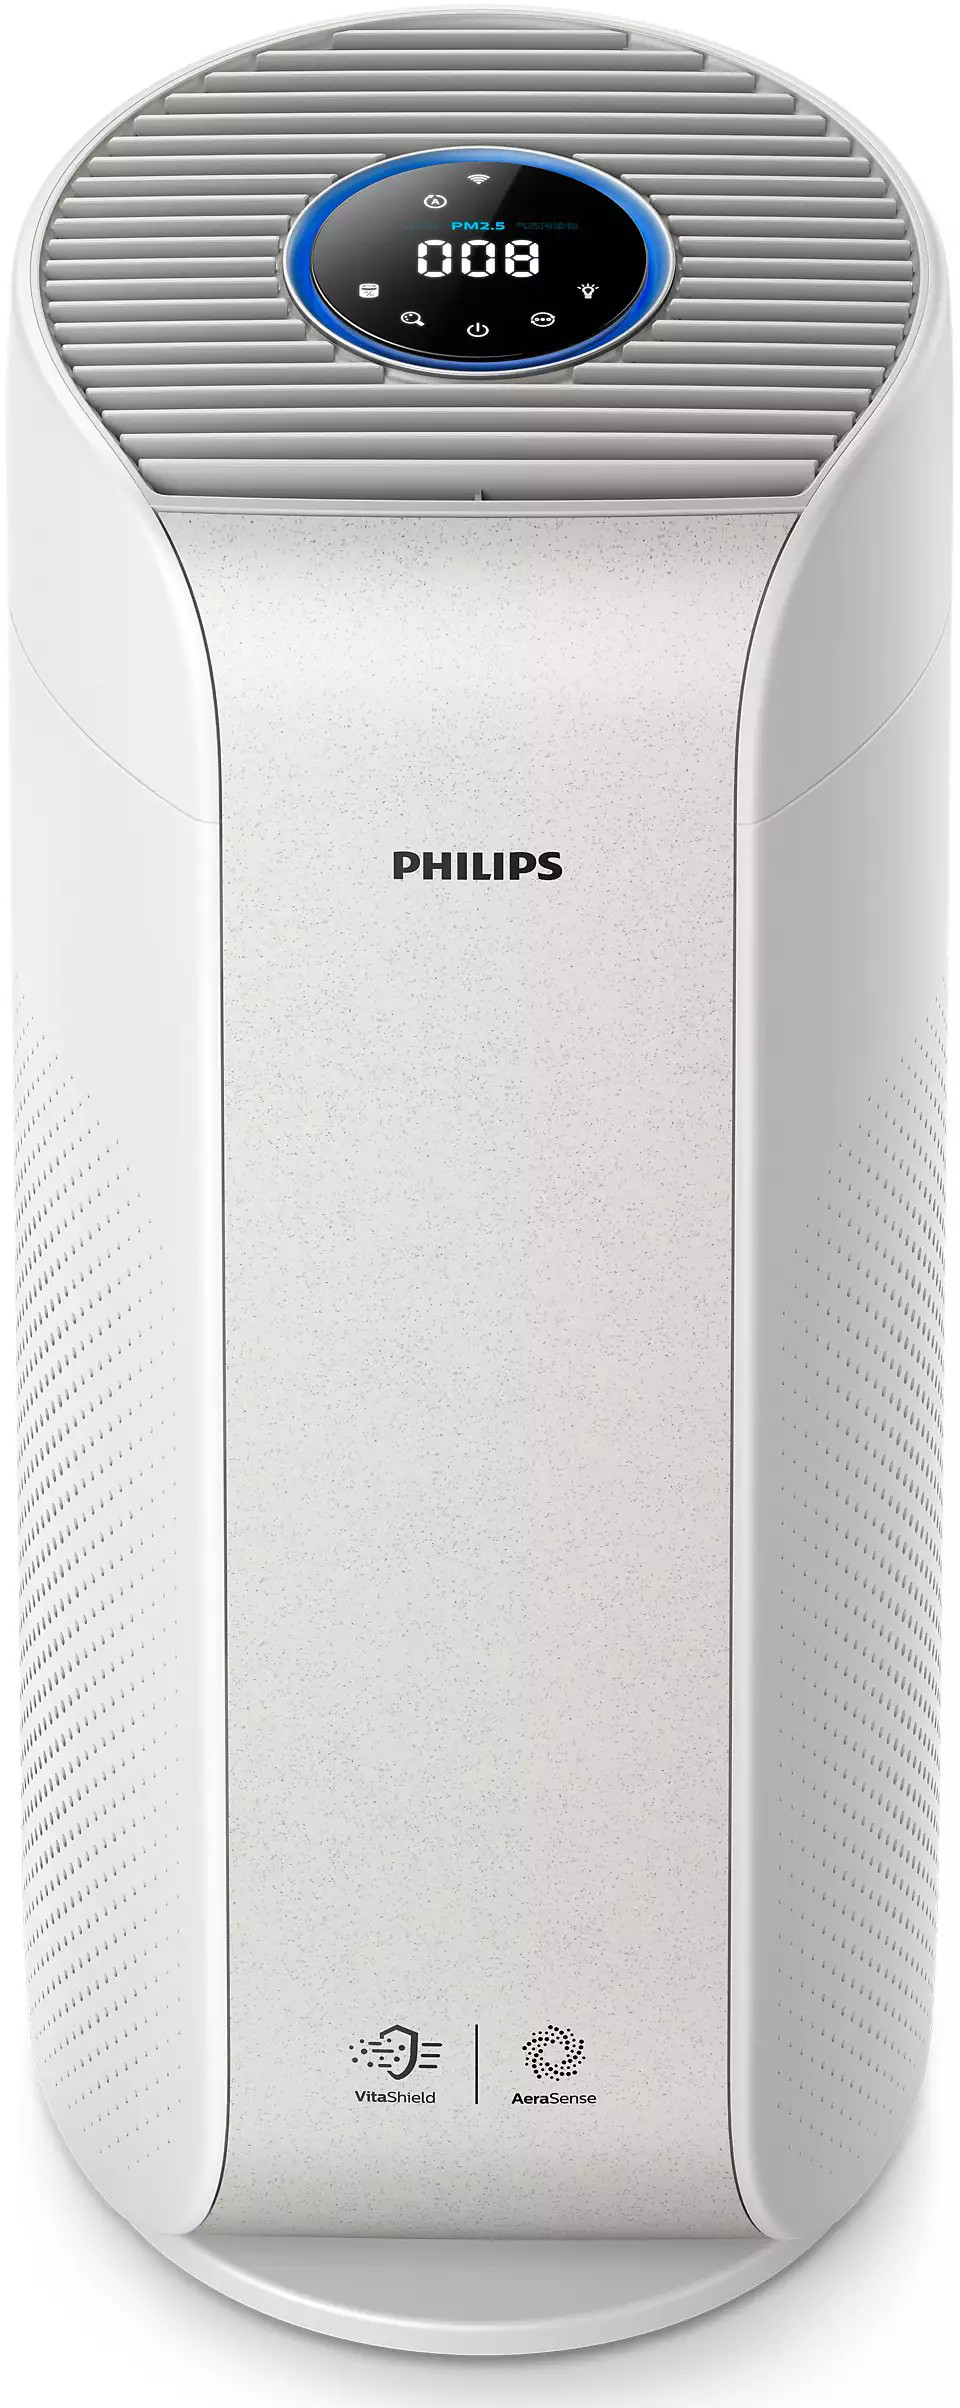 Купить очиститель воздуха philips для дома Philips AC3055/51 в Киеве